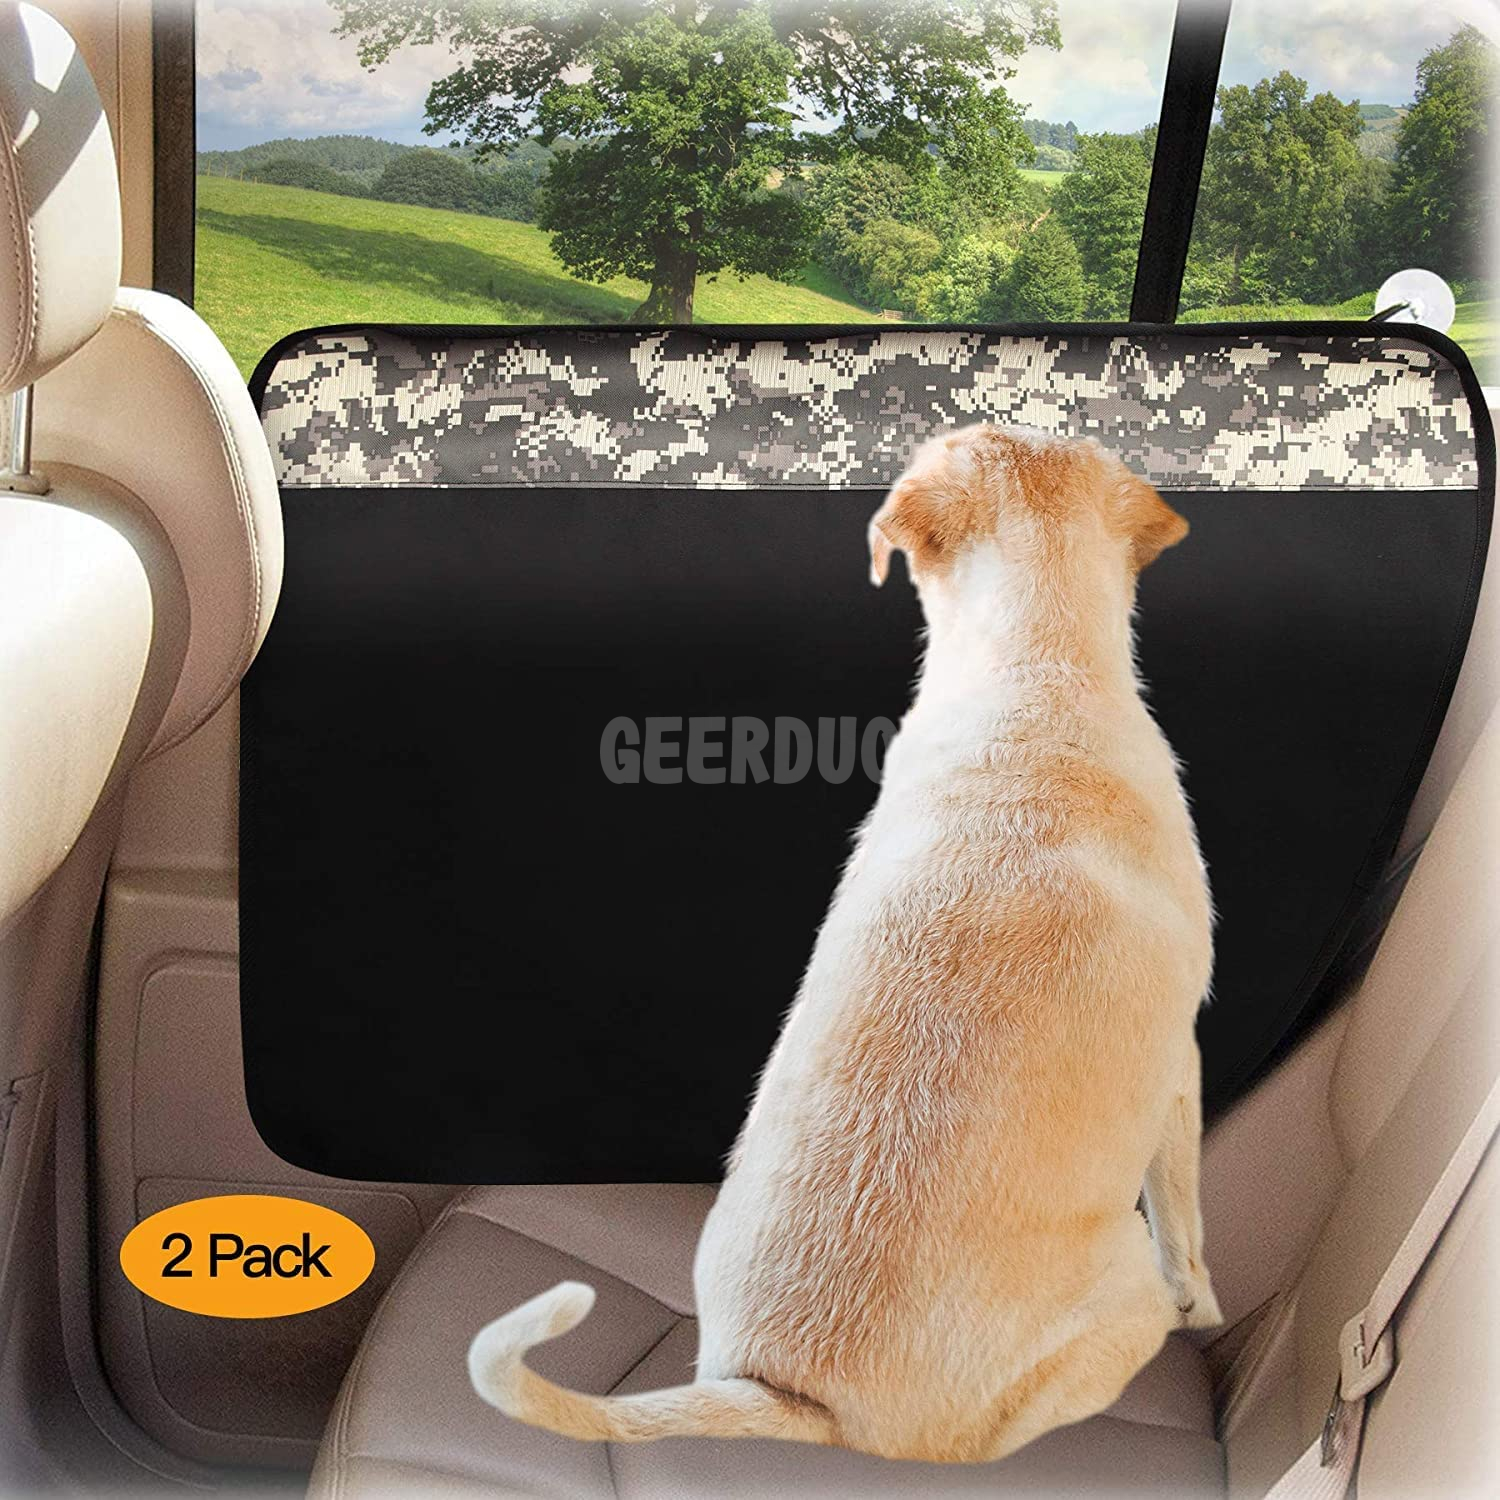 Scratchproof Nonslip Dog Car Door Protector GRDSD-3